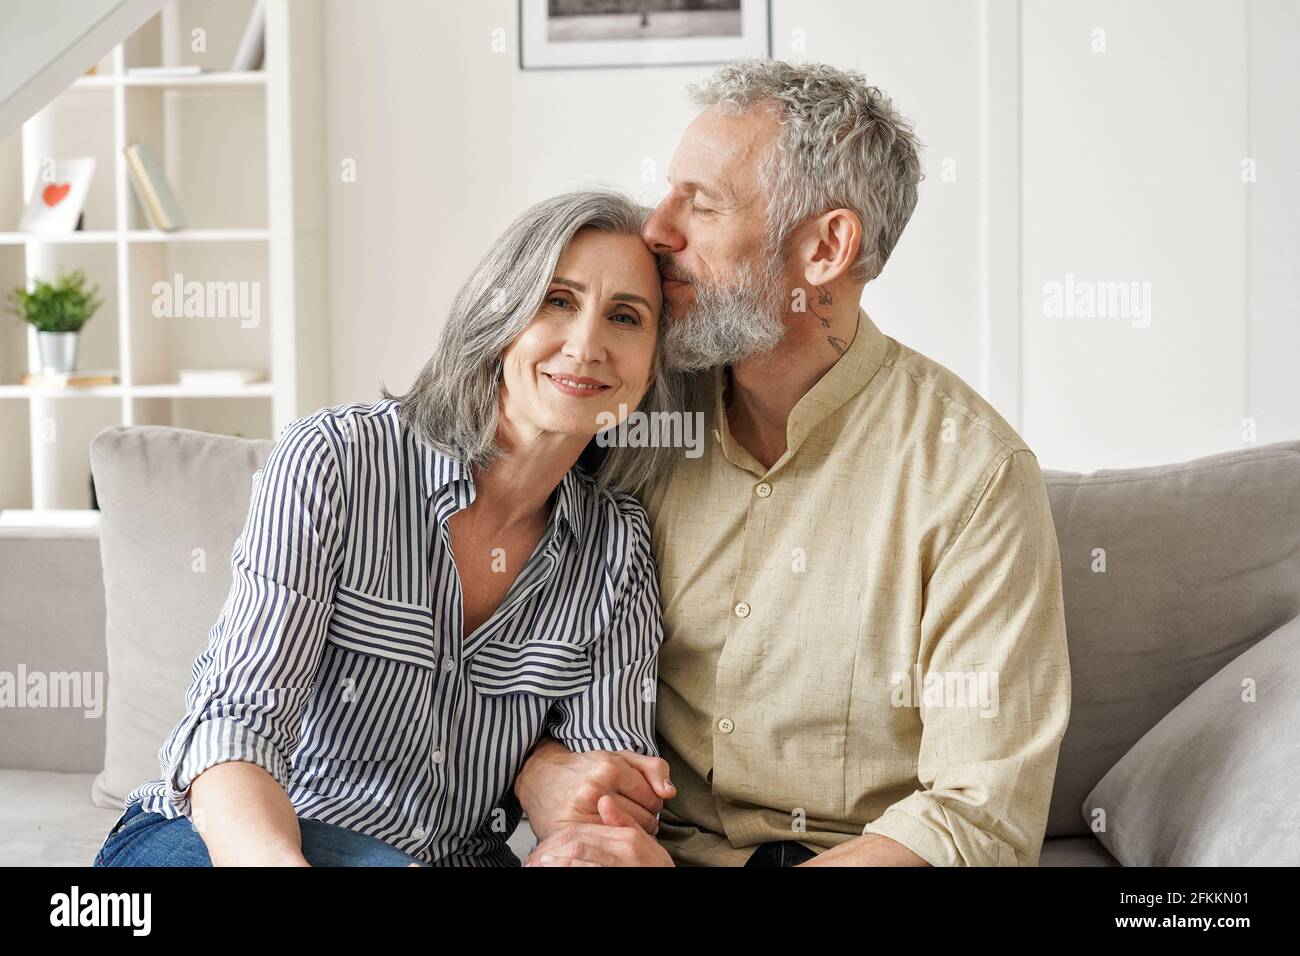 Glücklich anhänglich stilvoll älter reifen Paar Bindung mit Augen zu Hause geschlossen. Stockfoto